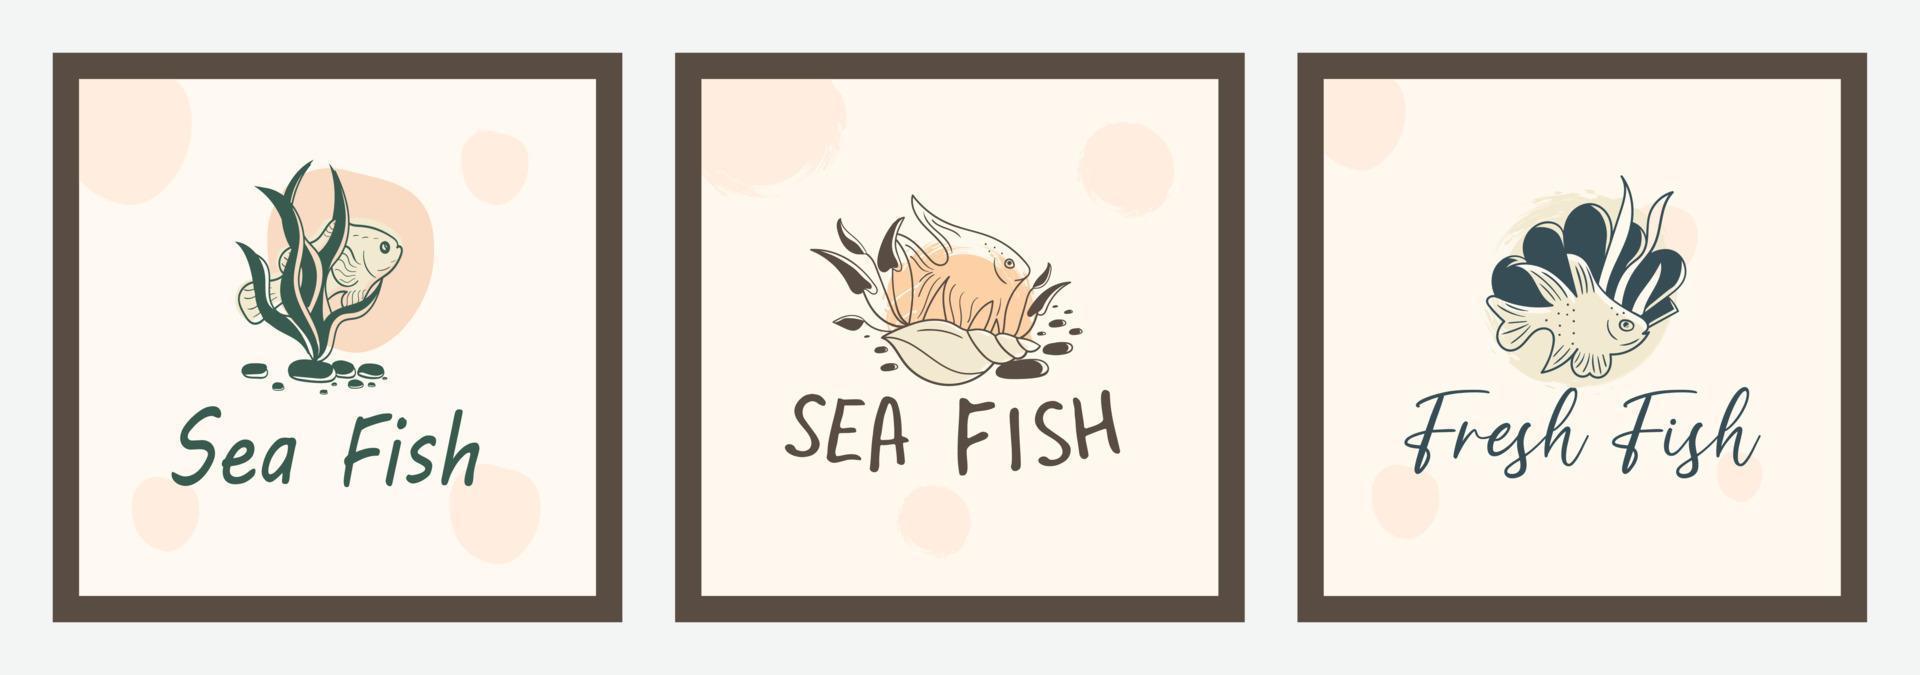 colección de diseño de logotipo de comida o pescado dibujado a mano con elementos oceánicos bajo el agua vector